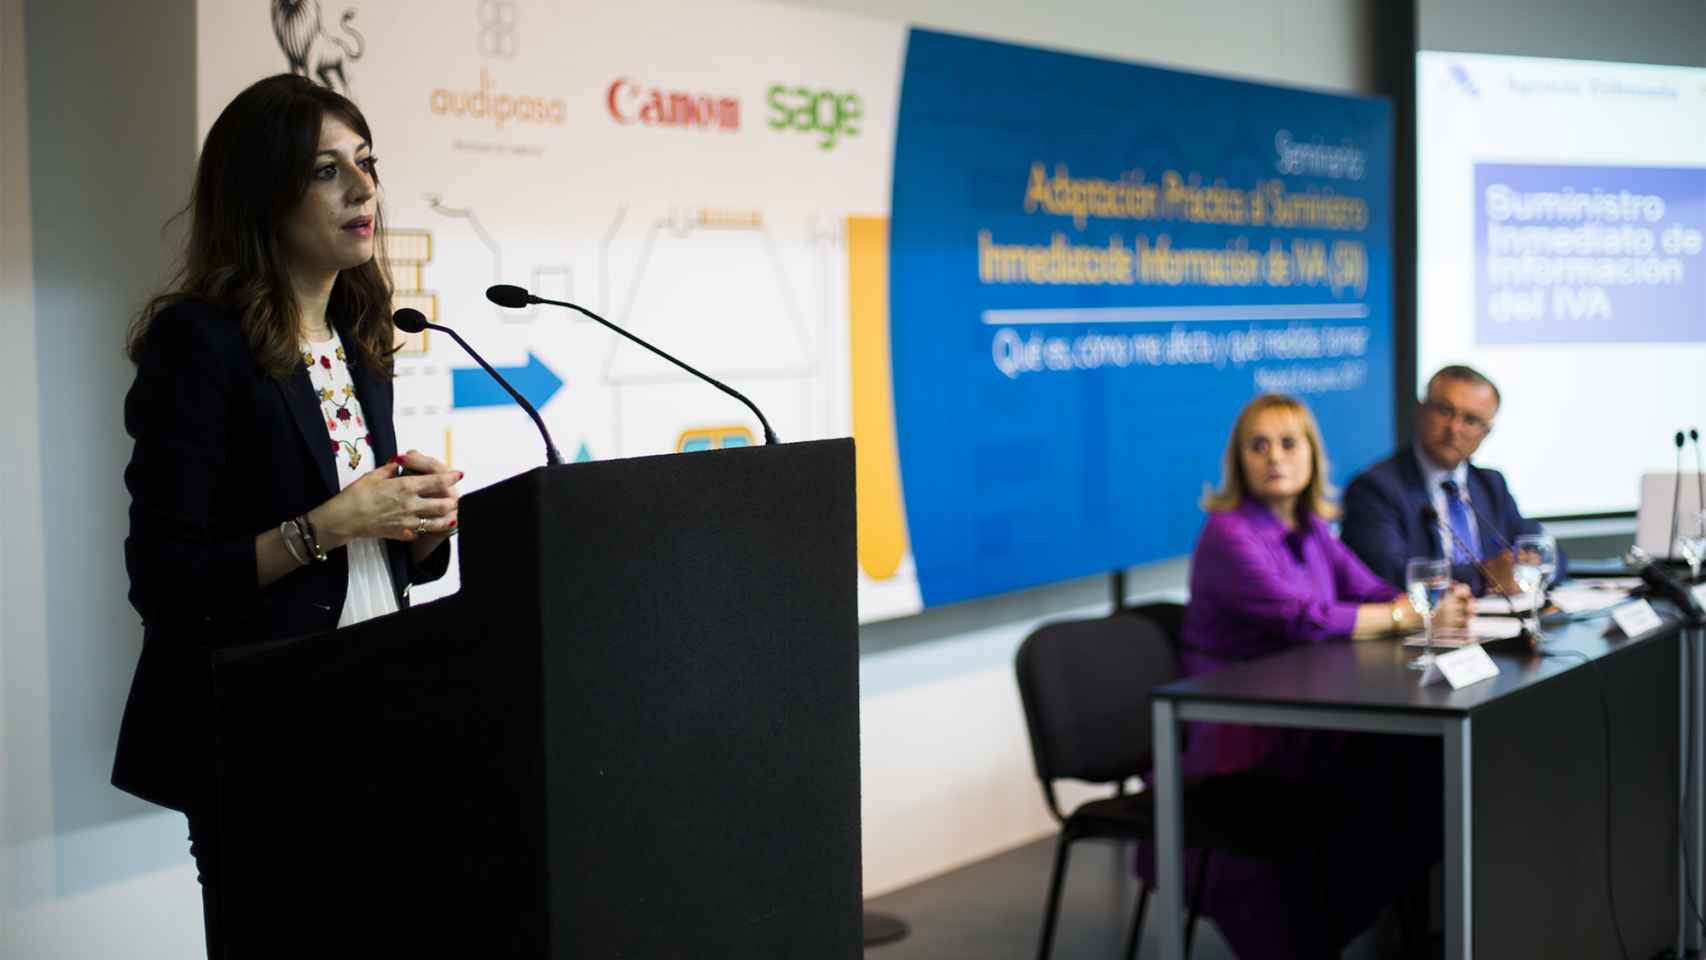 Mercedes Jordán Valdizán, Inspectora  y coordinadora del Área de la Agencia Tributaria (AEAT) realizó la ponencia inaugural.